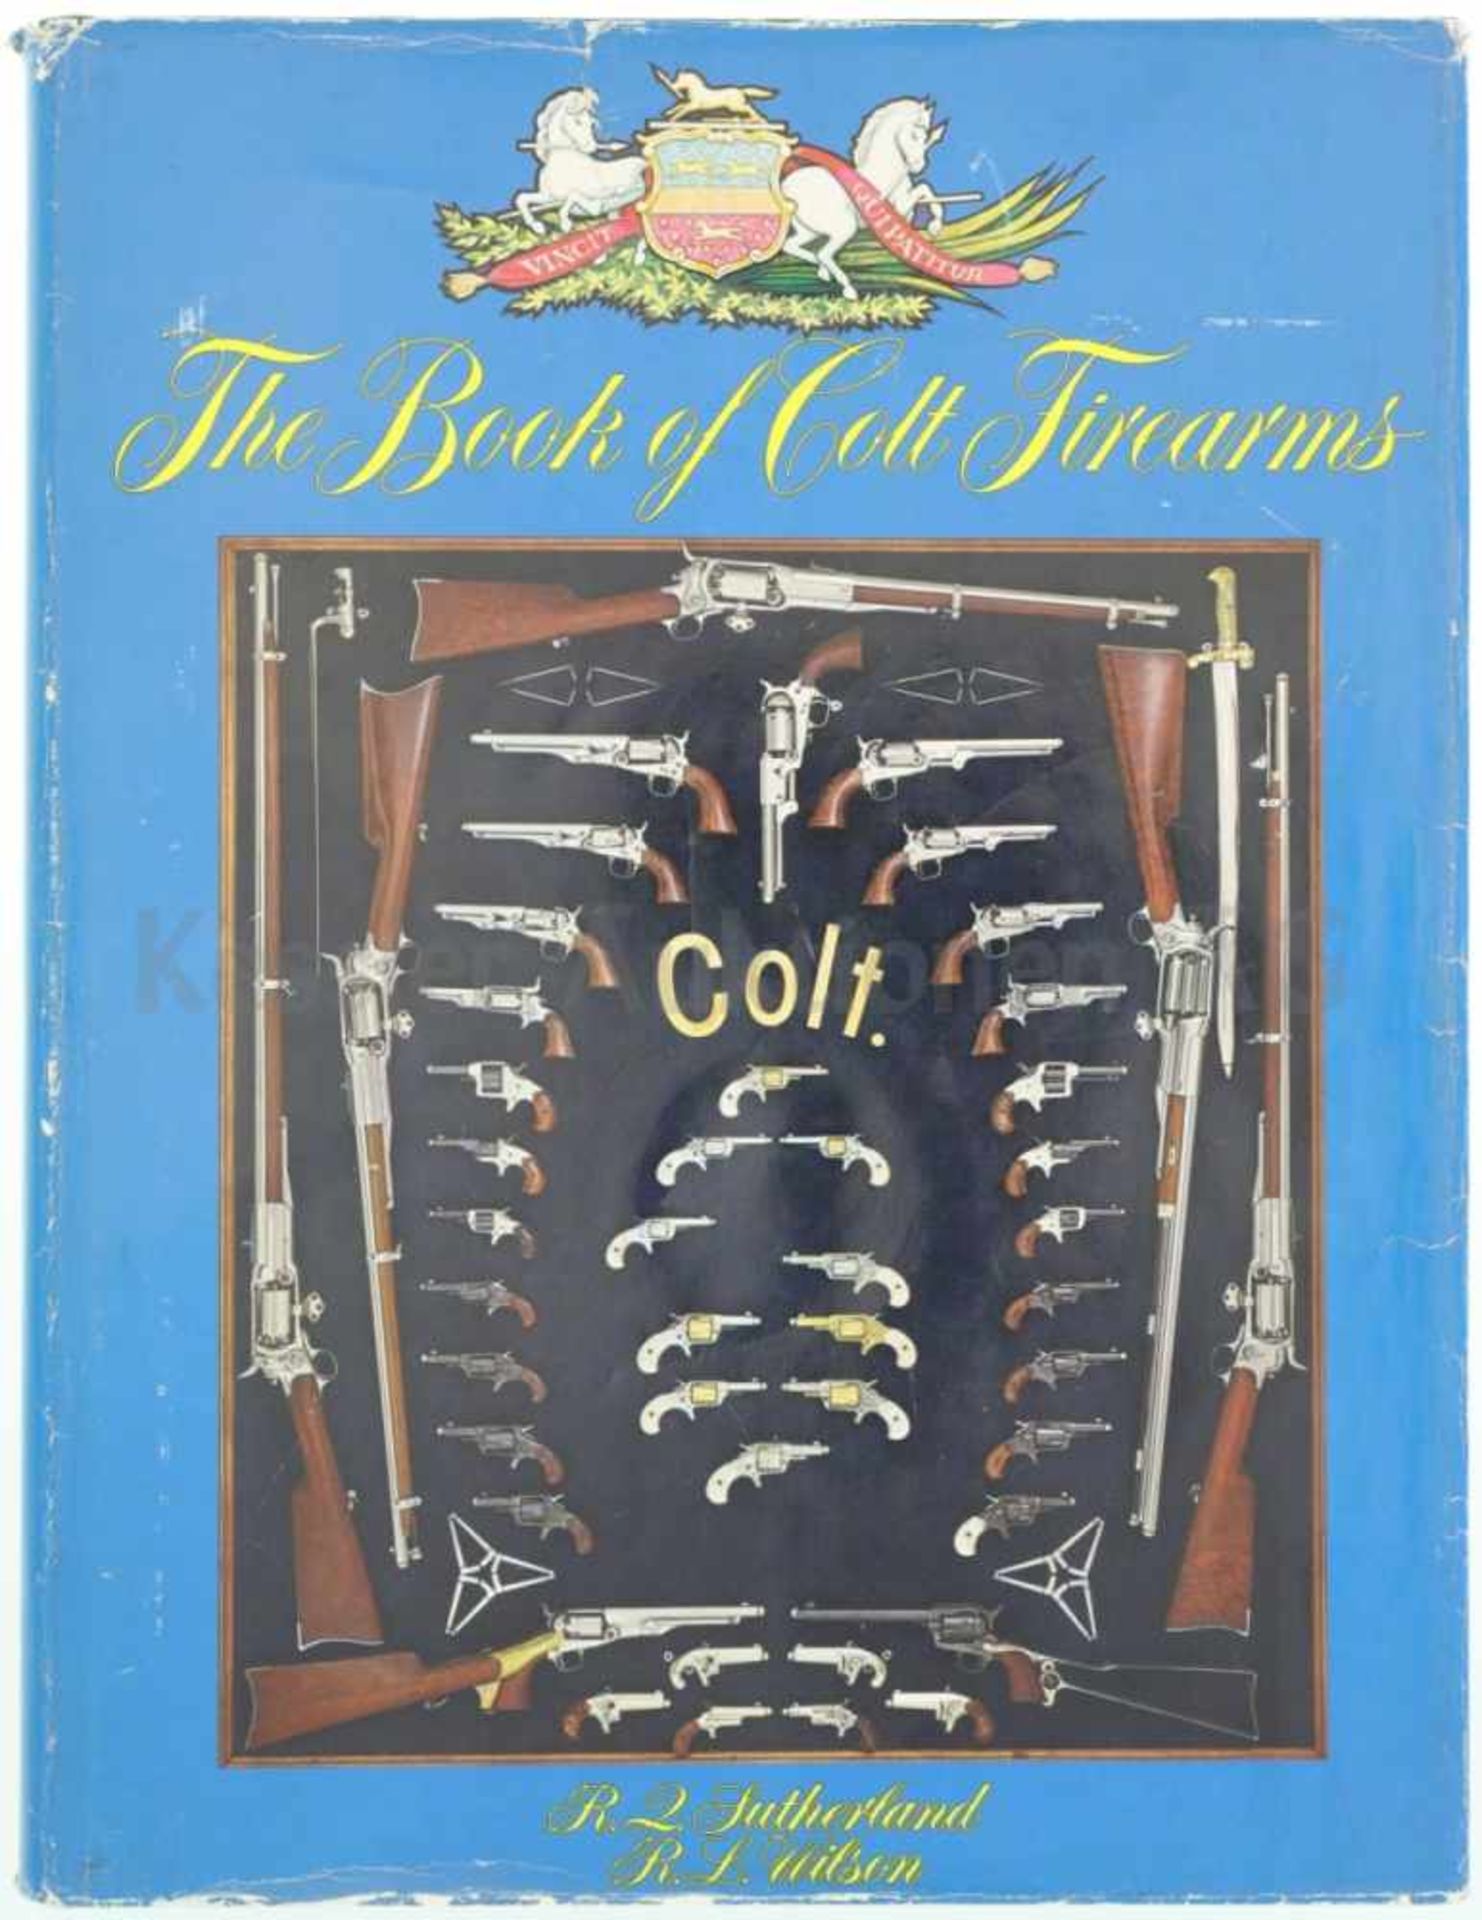 The Book of Colt Firearms, von R.Z. Sutherland und R.L. Wilson Geschichte der Firma Colt in